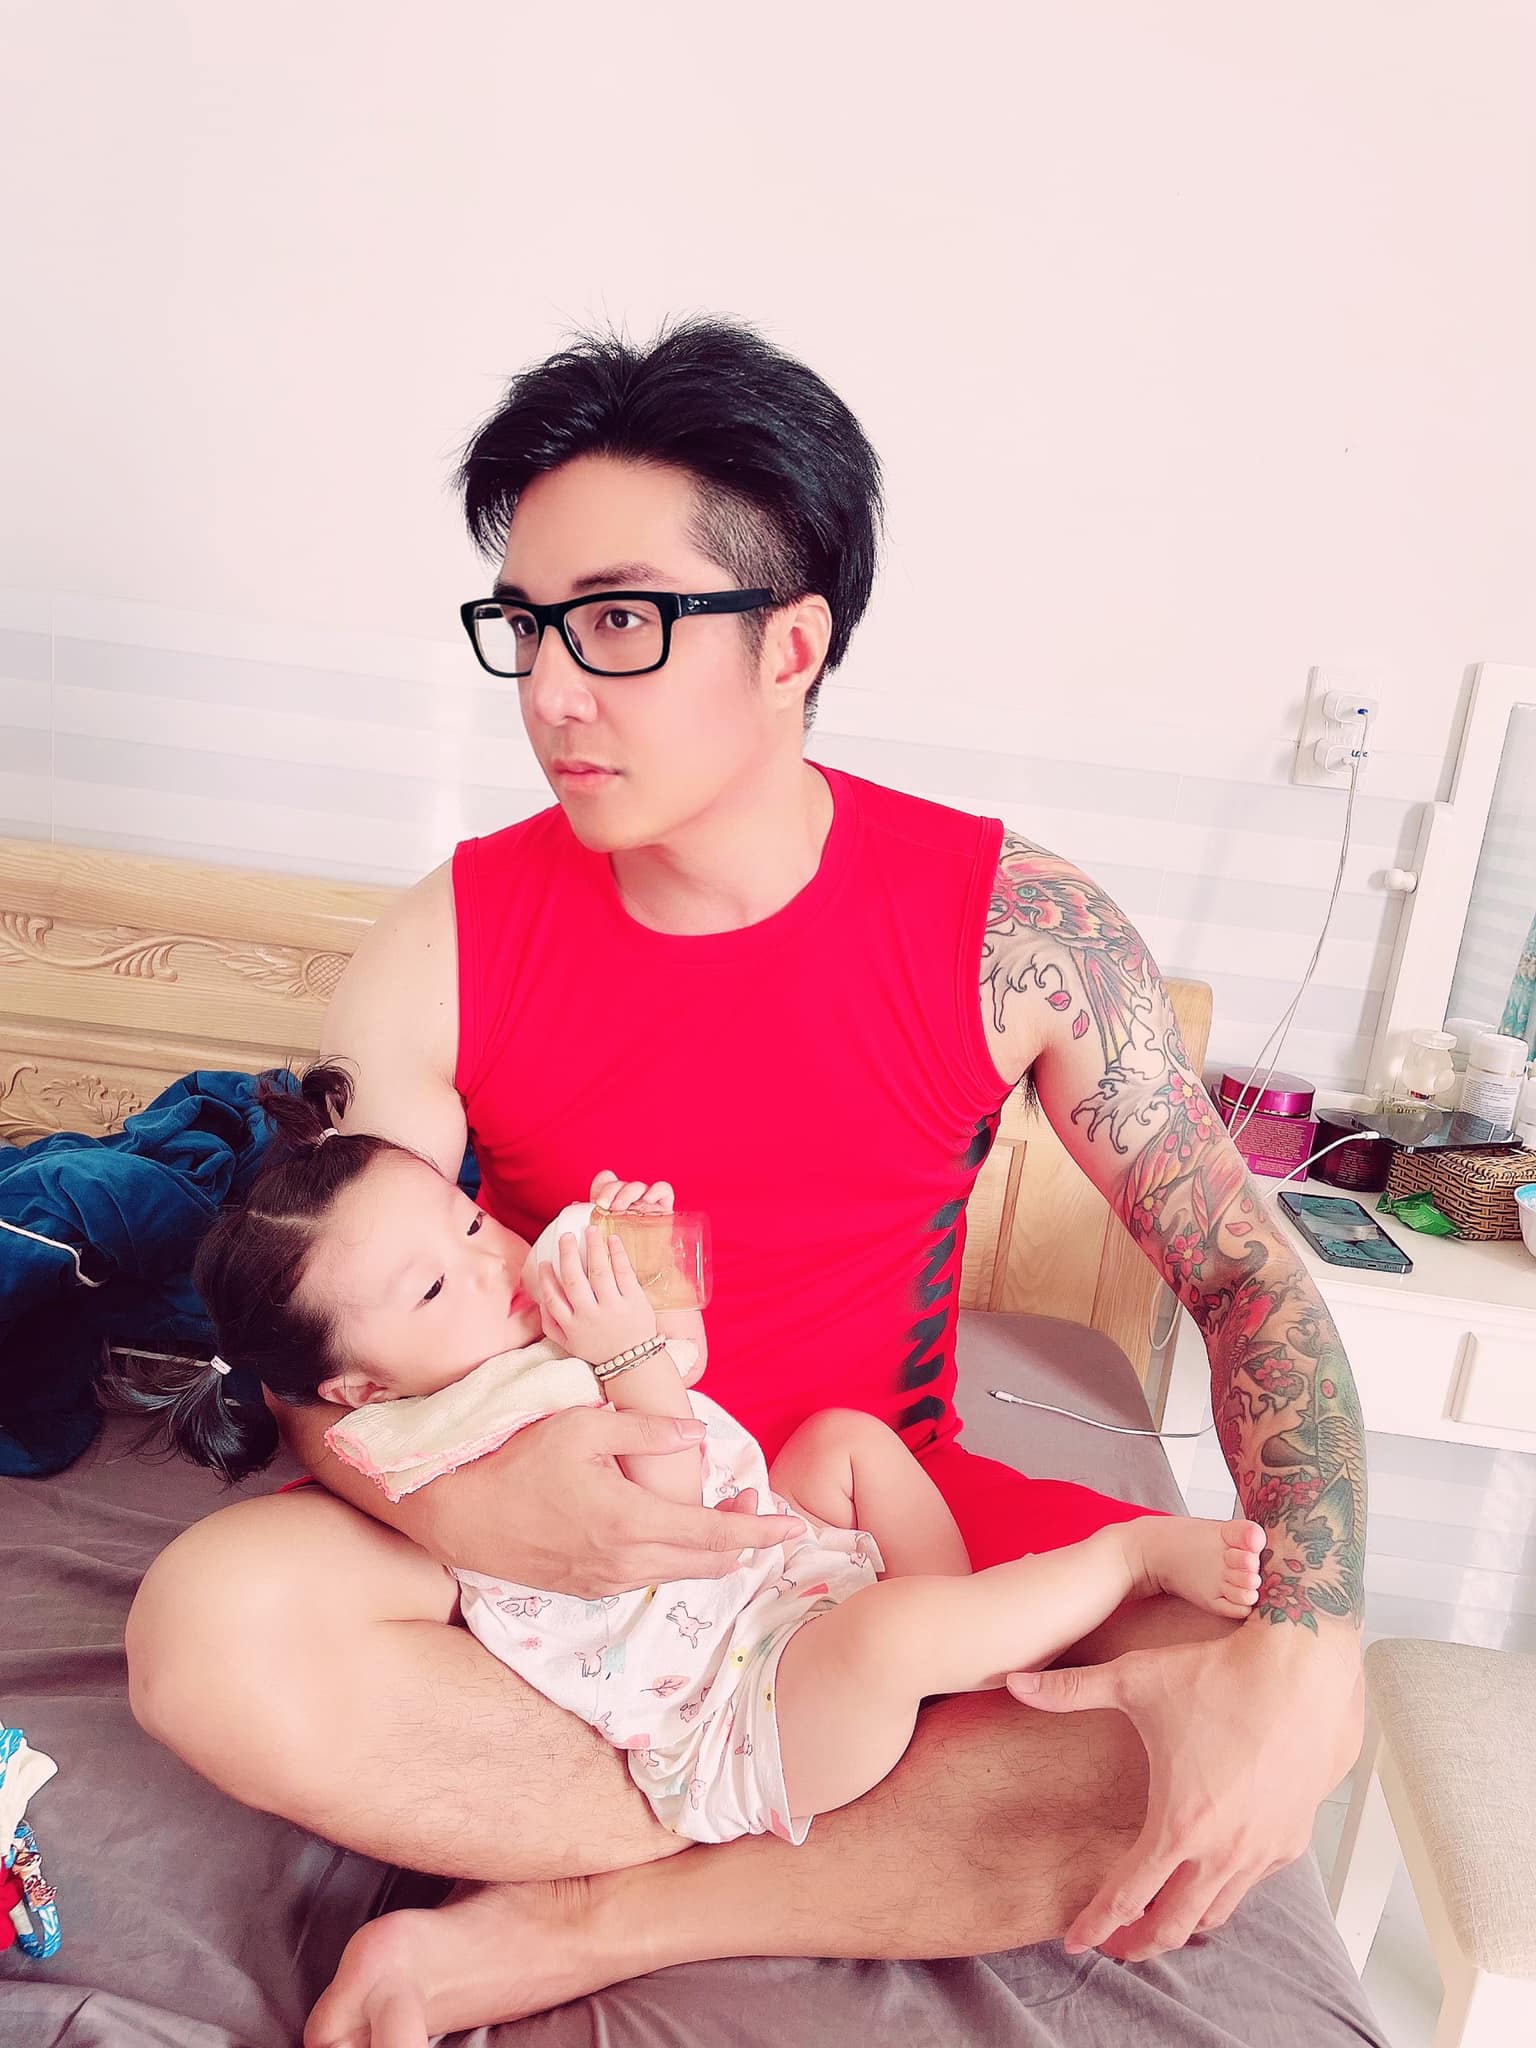 Ca sĩ Lâm Chấn Khang hé lộ thời gian con gái chào đời, thương con vì 7 tháng phải ở quê vì dịch - ảnh 2